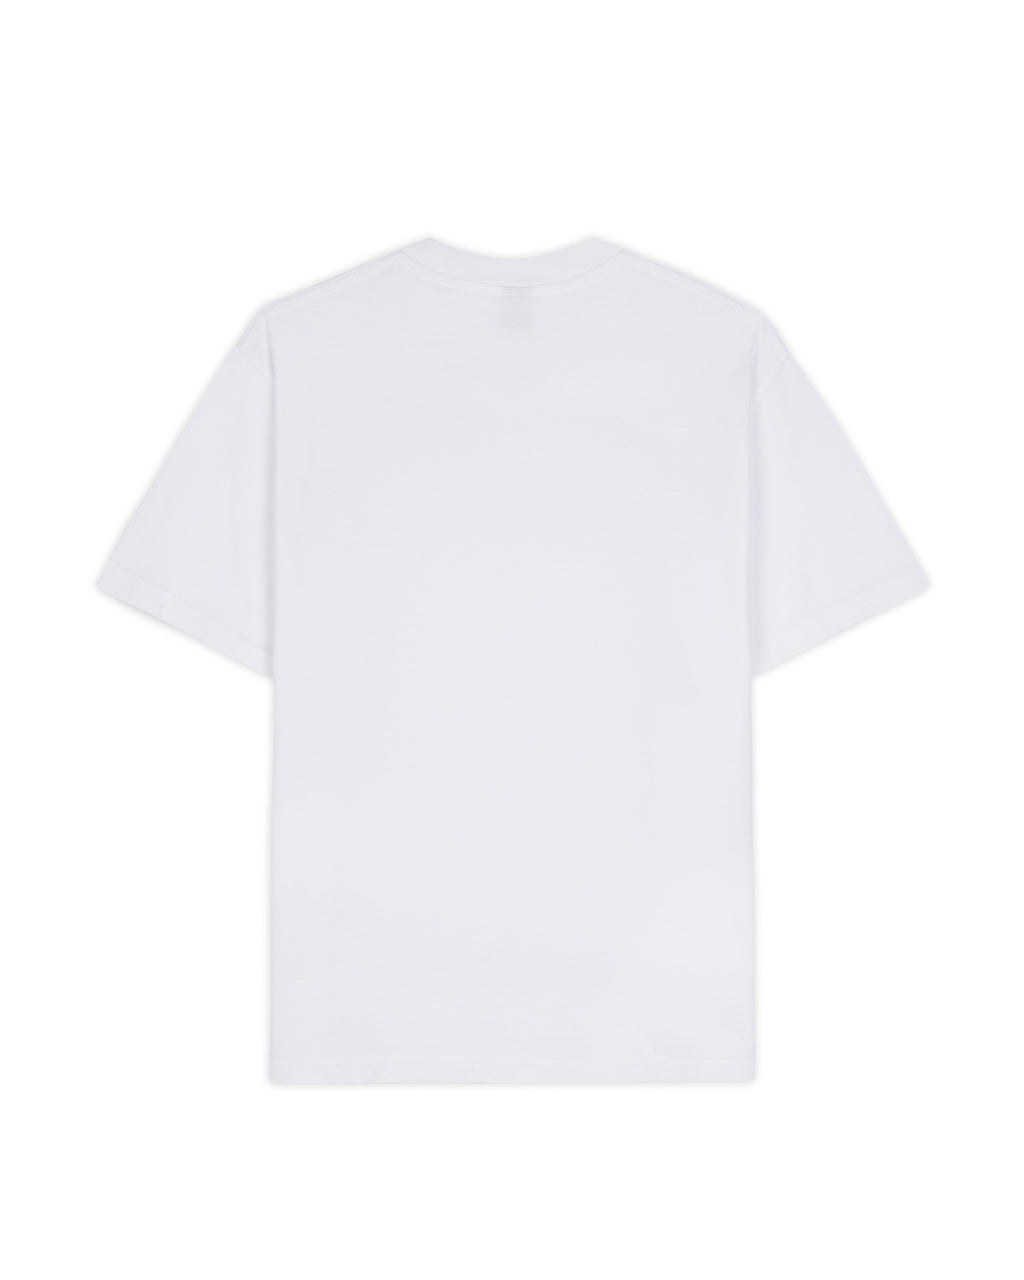 Gaspar Twig T-shirt - White 2